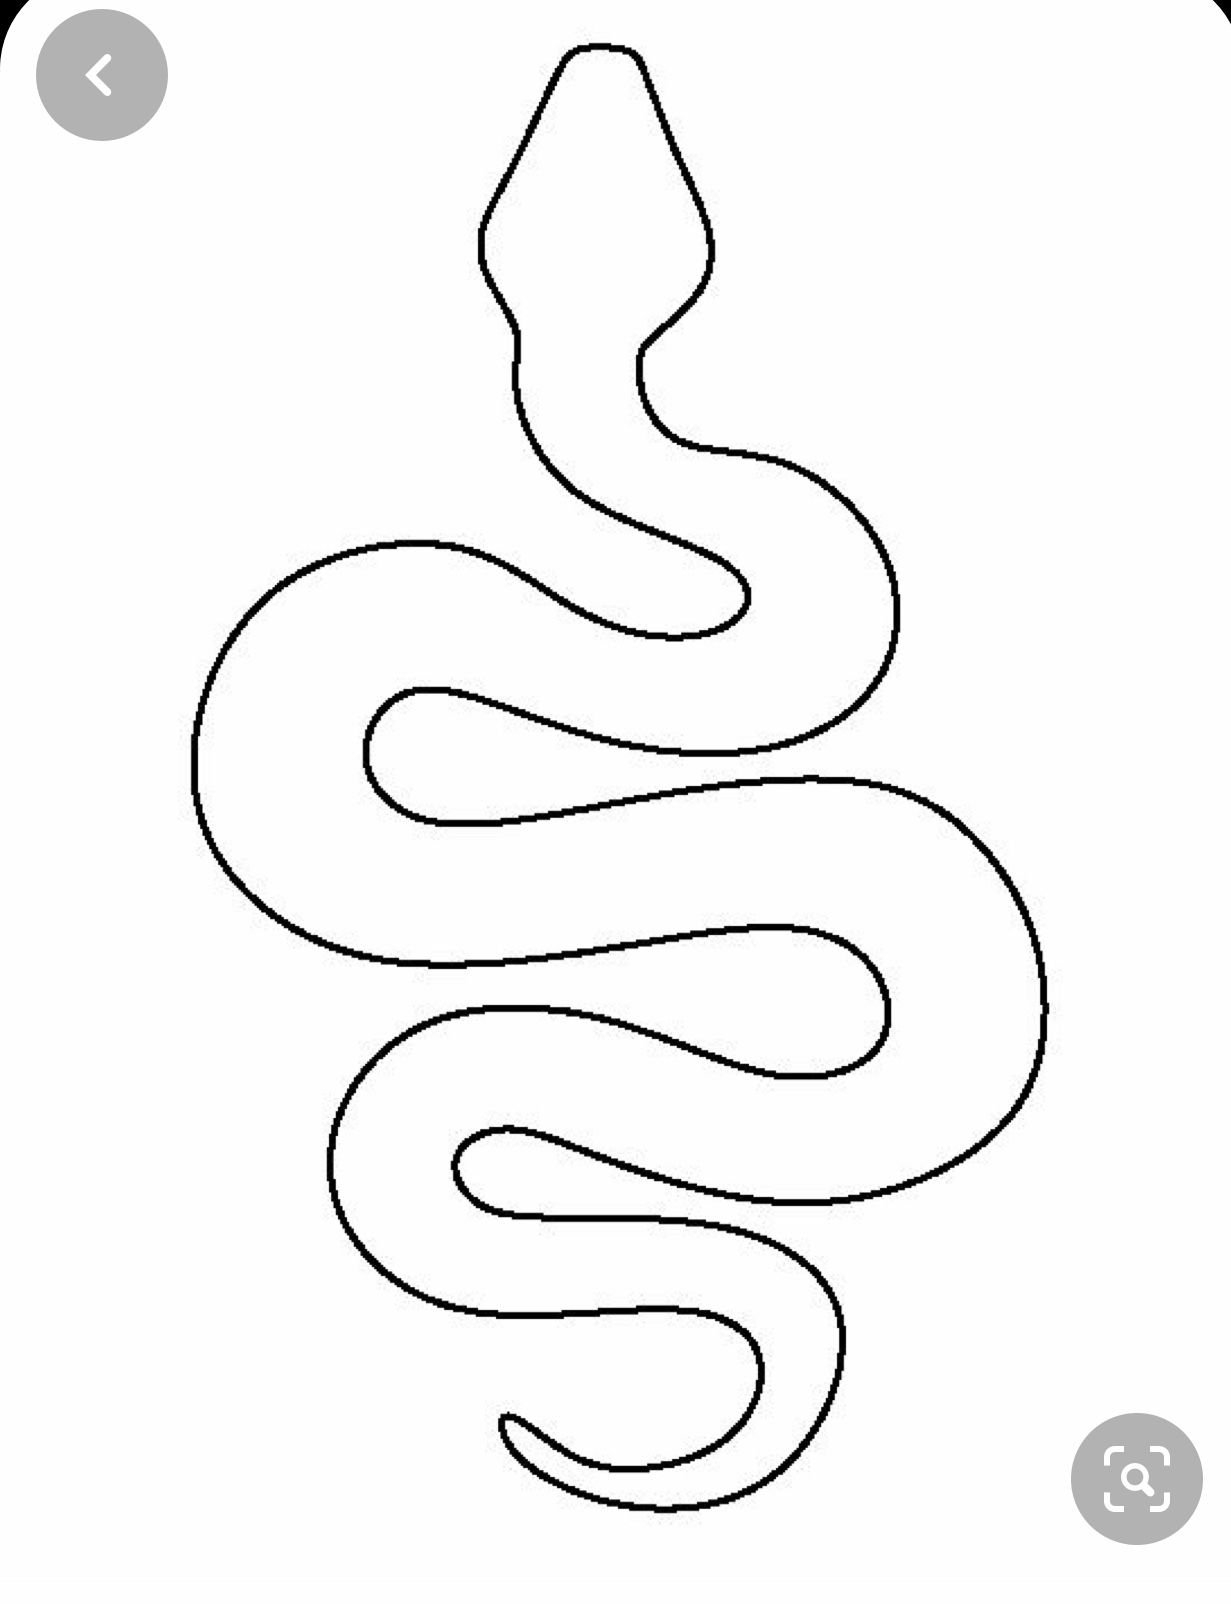 Как нарисовать змею карандашом поэтапно для детей